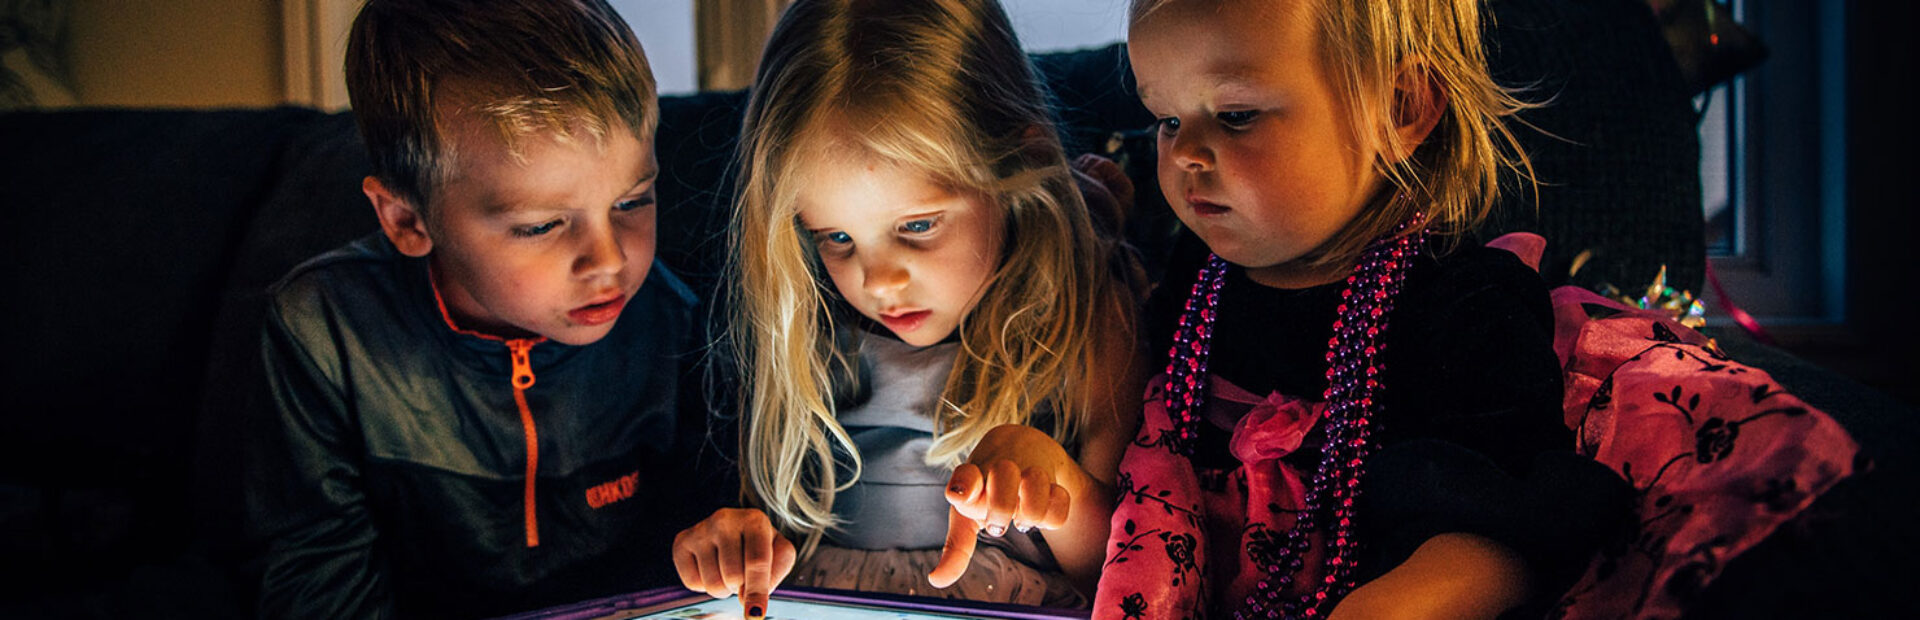 Vivir con pantallas: Efectos de la sobreexposición en los niños y niñas